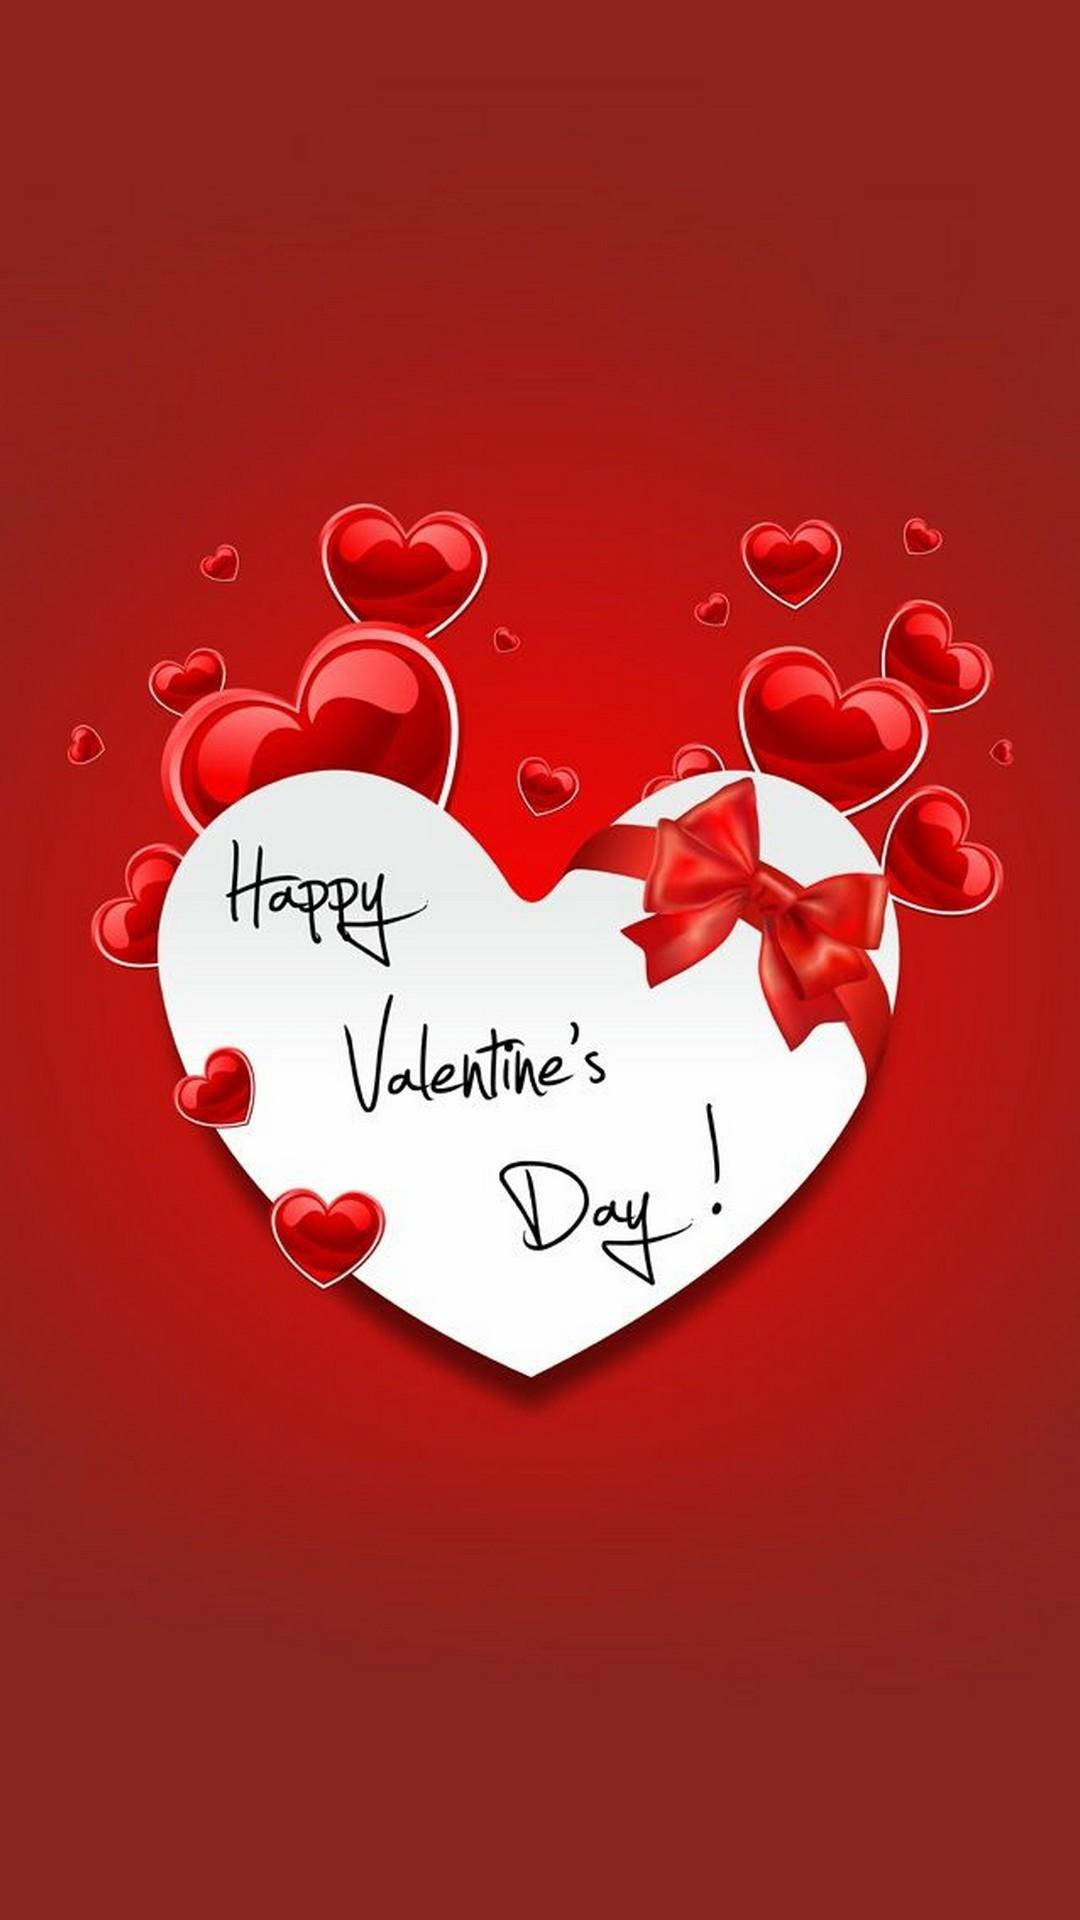 Happy Valentine’s Day Ribbon Heart